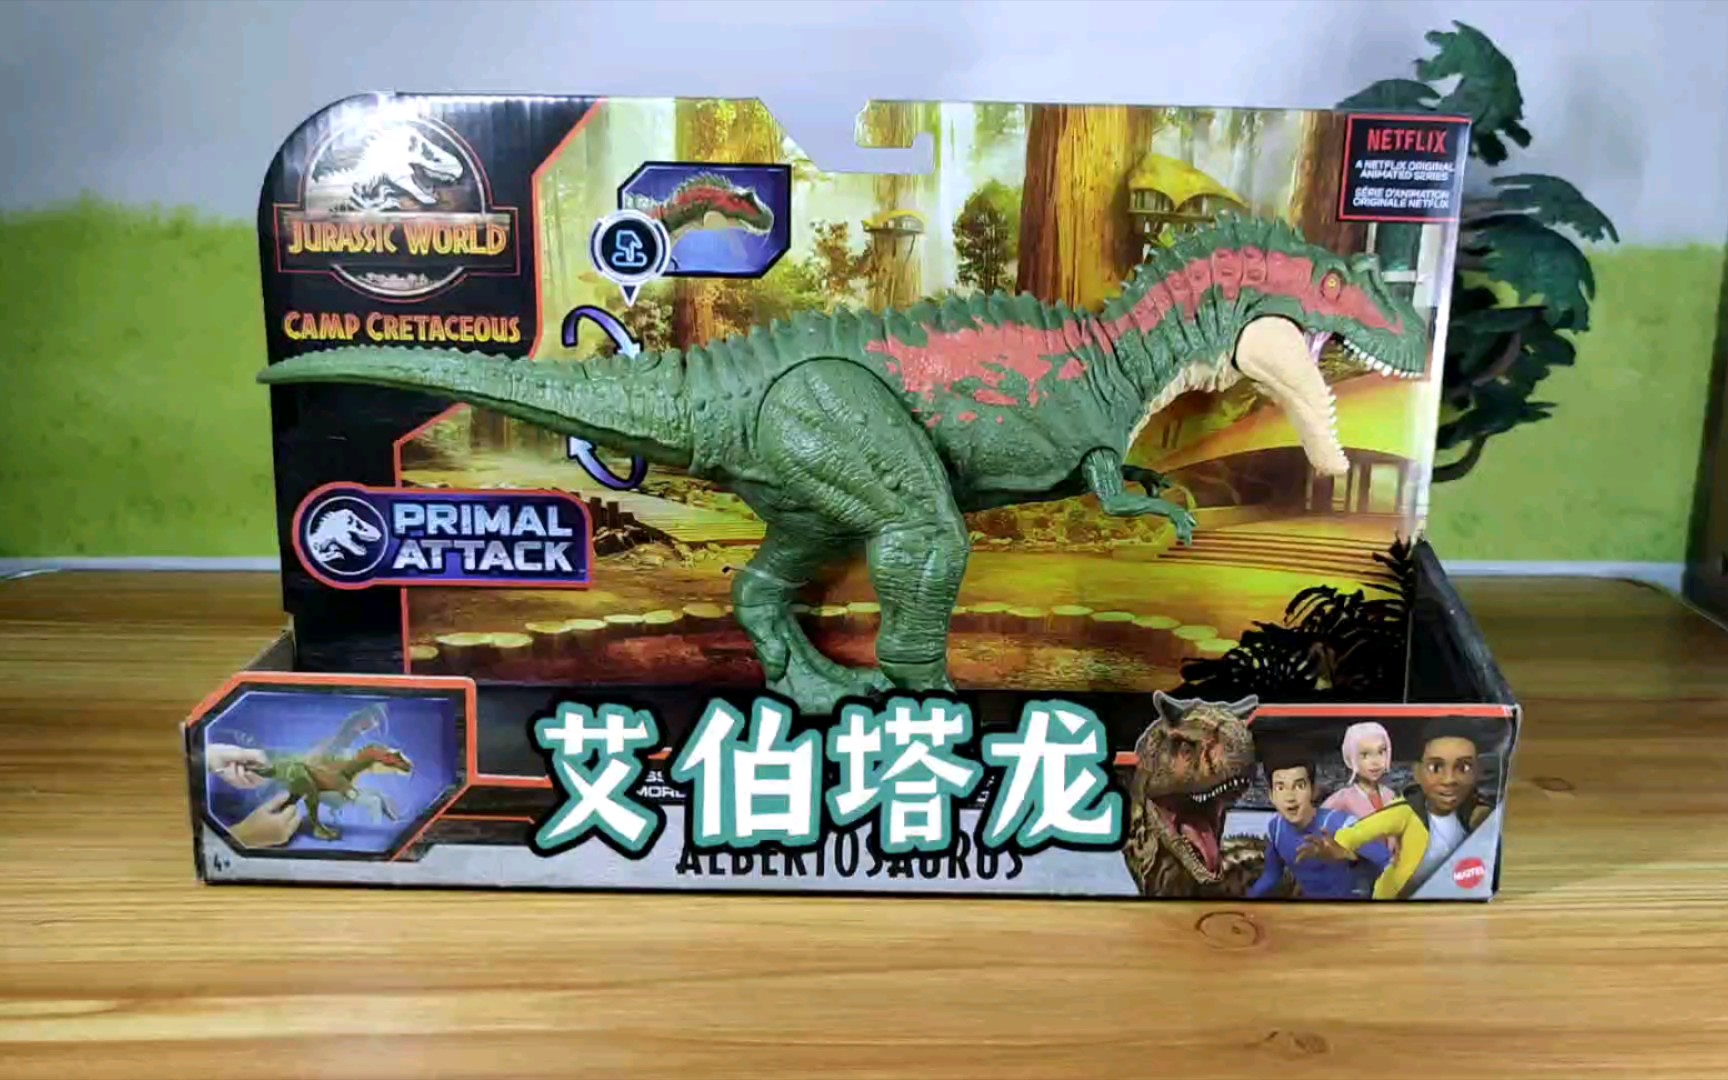 2021年美泰侏罗纪世界系列新品恐龙玩具艾伯塔龙拆盒把玩分享